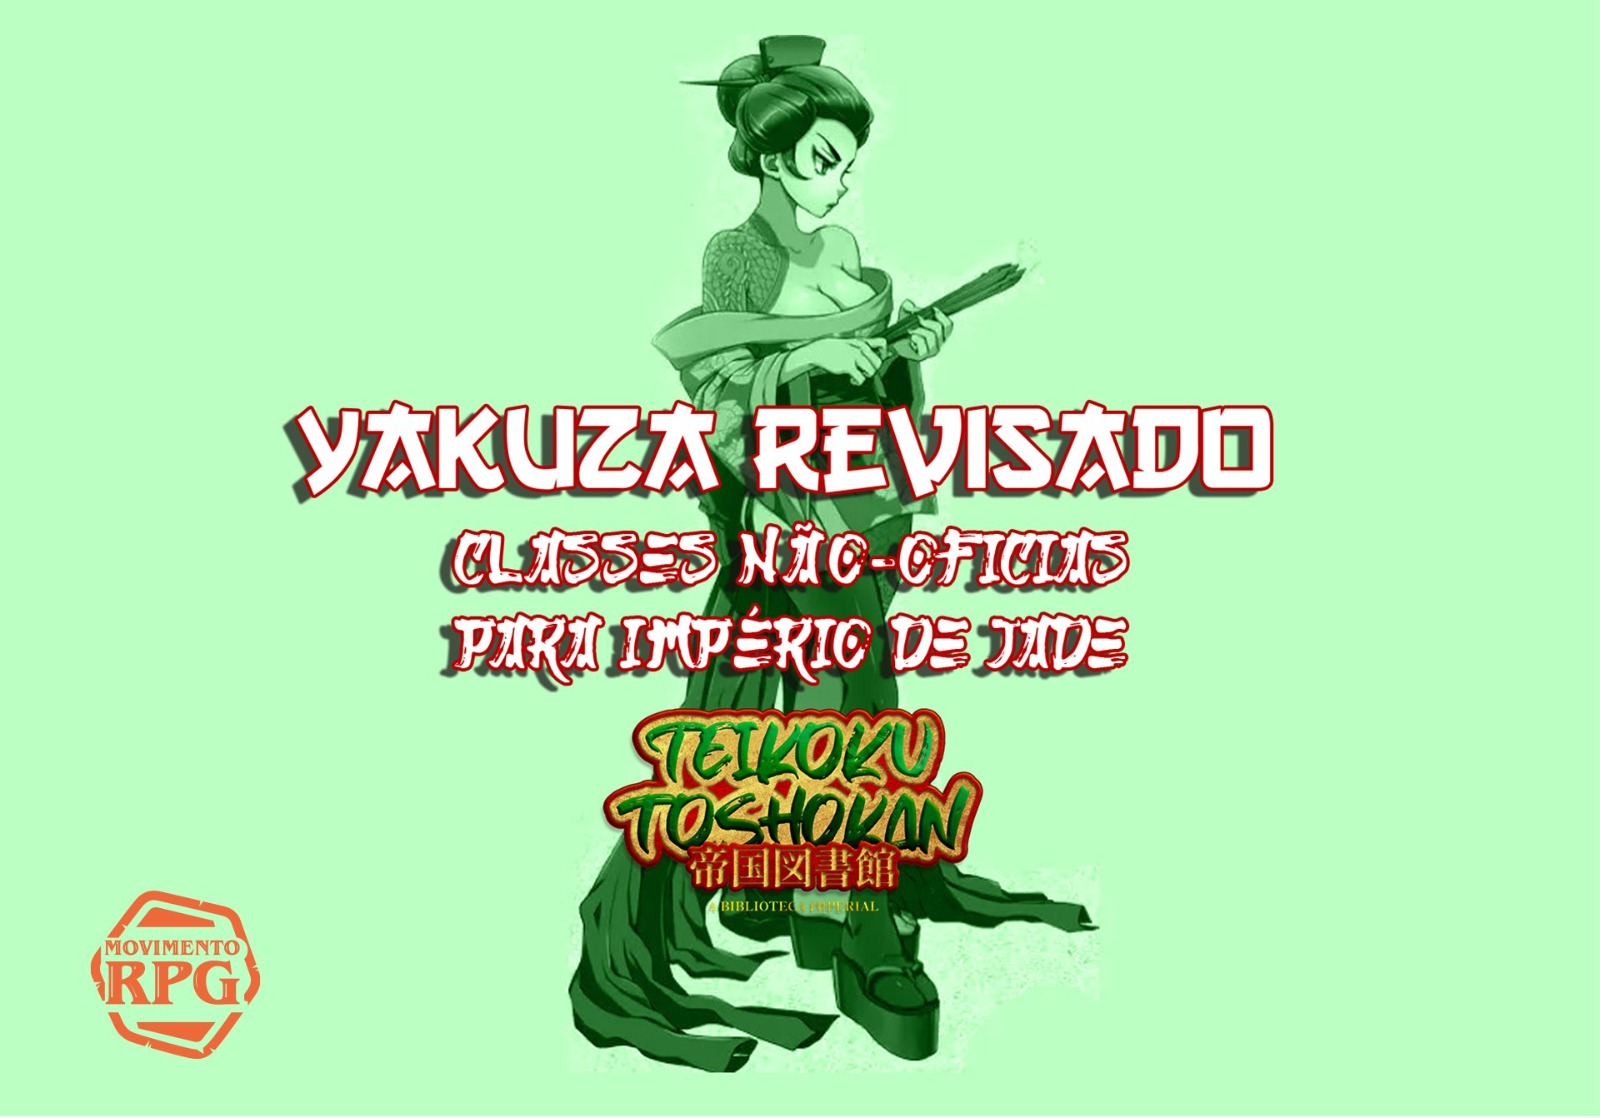 Yakuza Revisado – Classes Não-Oficias Para Império de Jade – Teikoku Toshokan